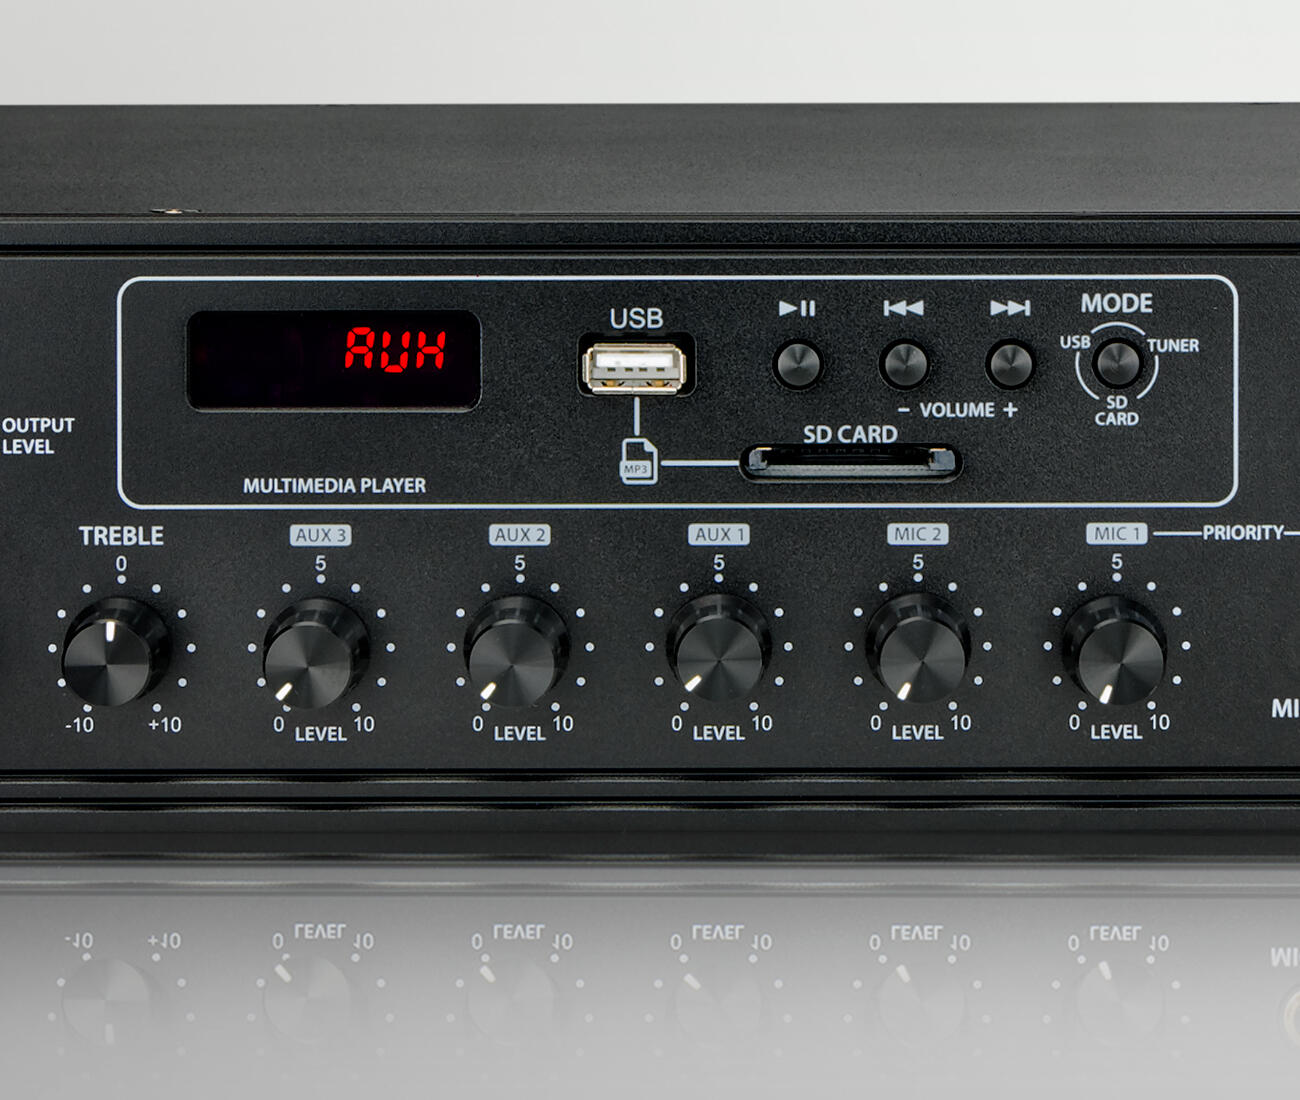 Kitas Audiocom MX350 